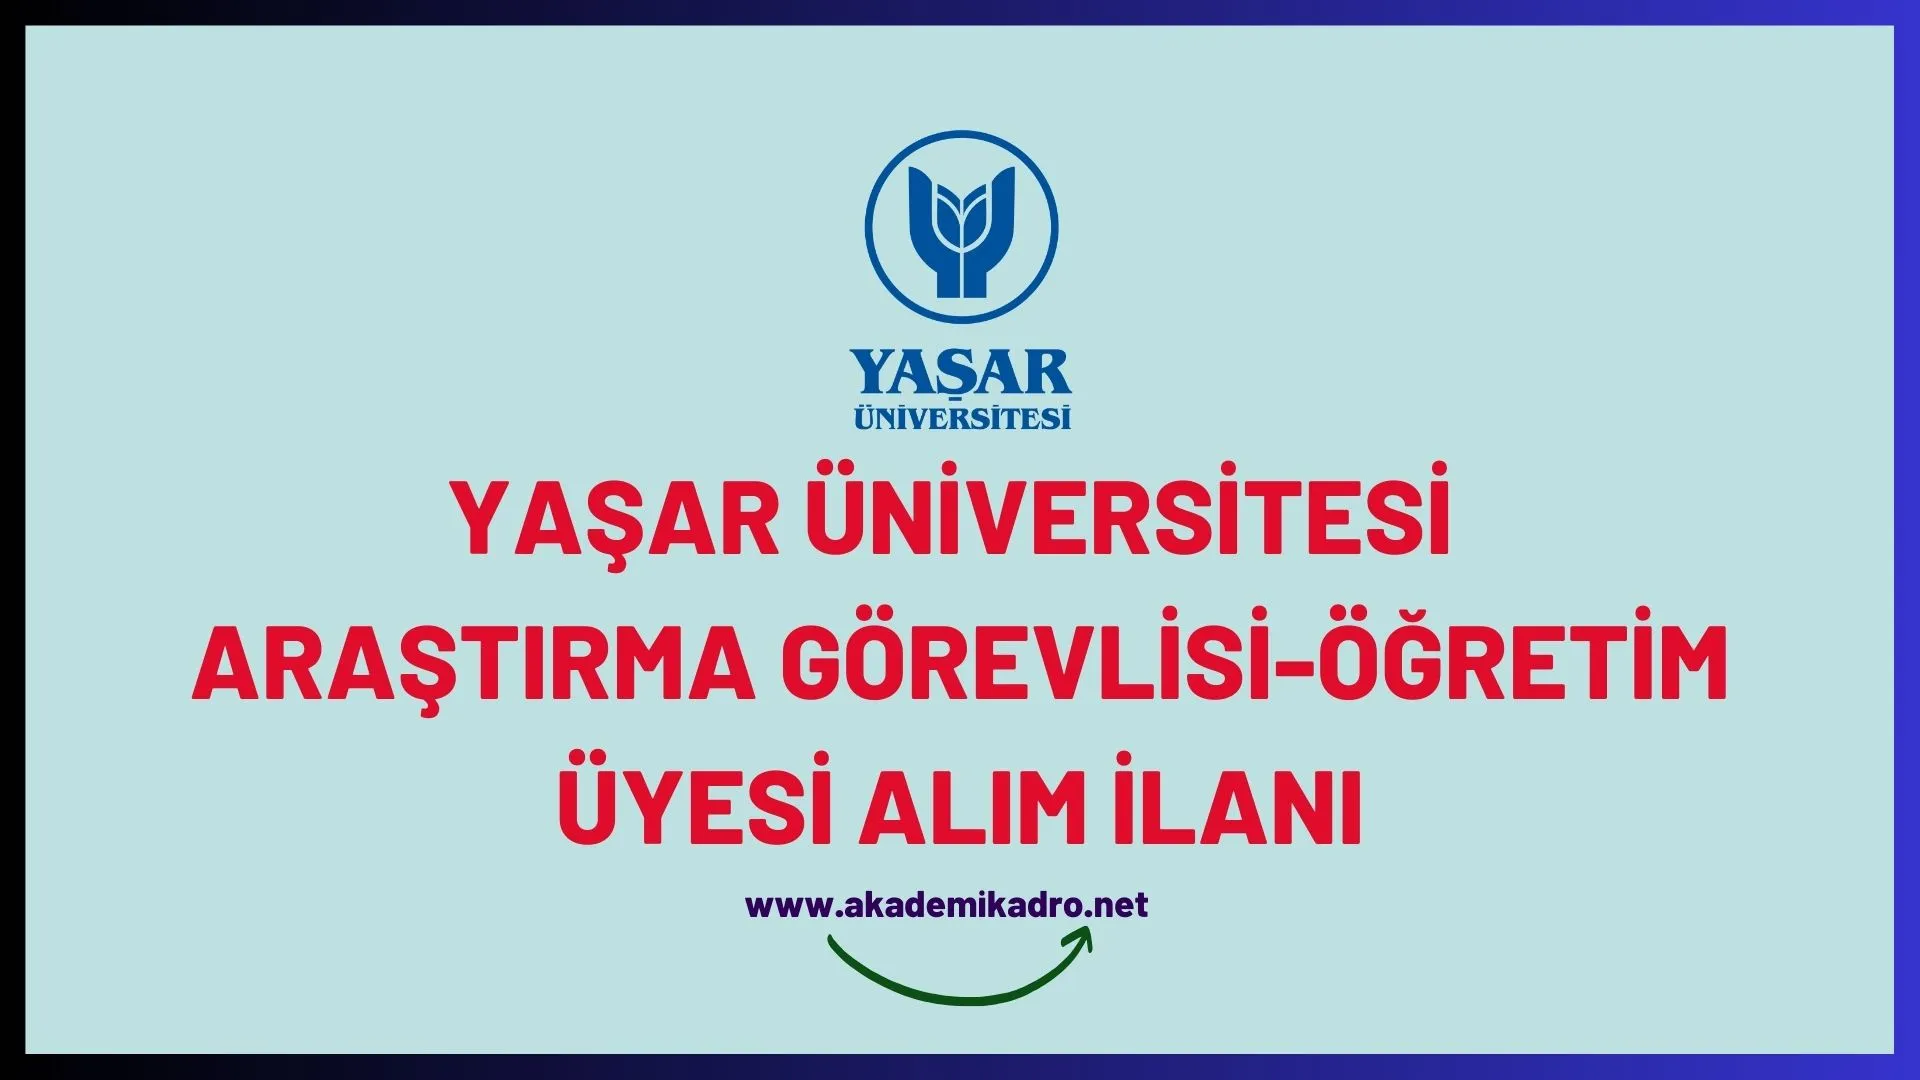 Yaşar Üniversitesi 6 Araştırma görevlisi ve 3 öğretim üyesi alacaktır.